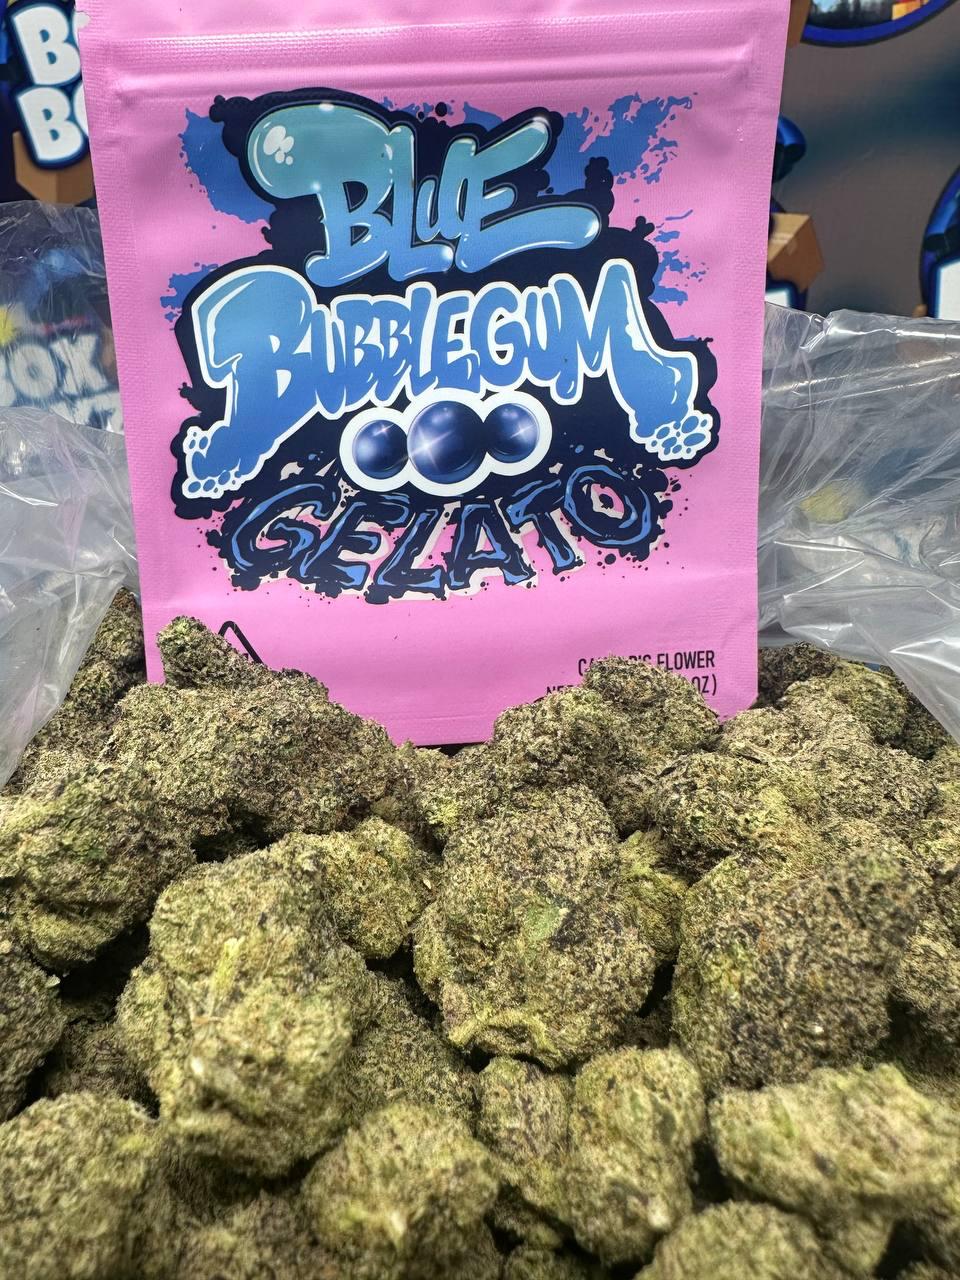 blue bubble gum strain